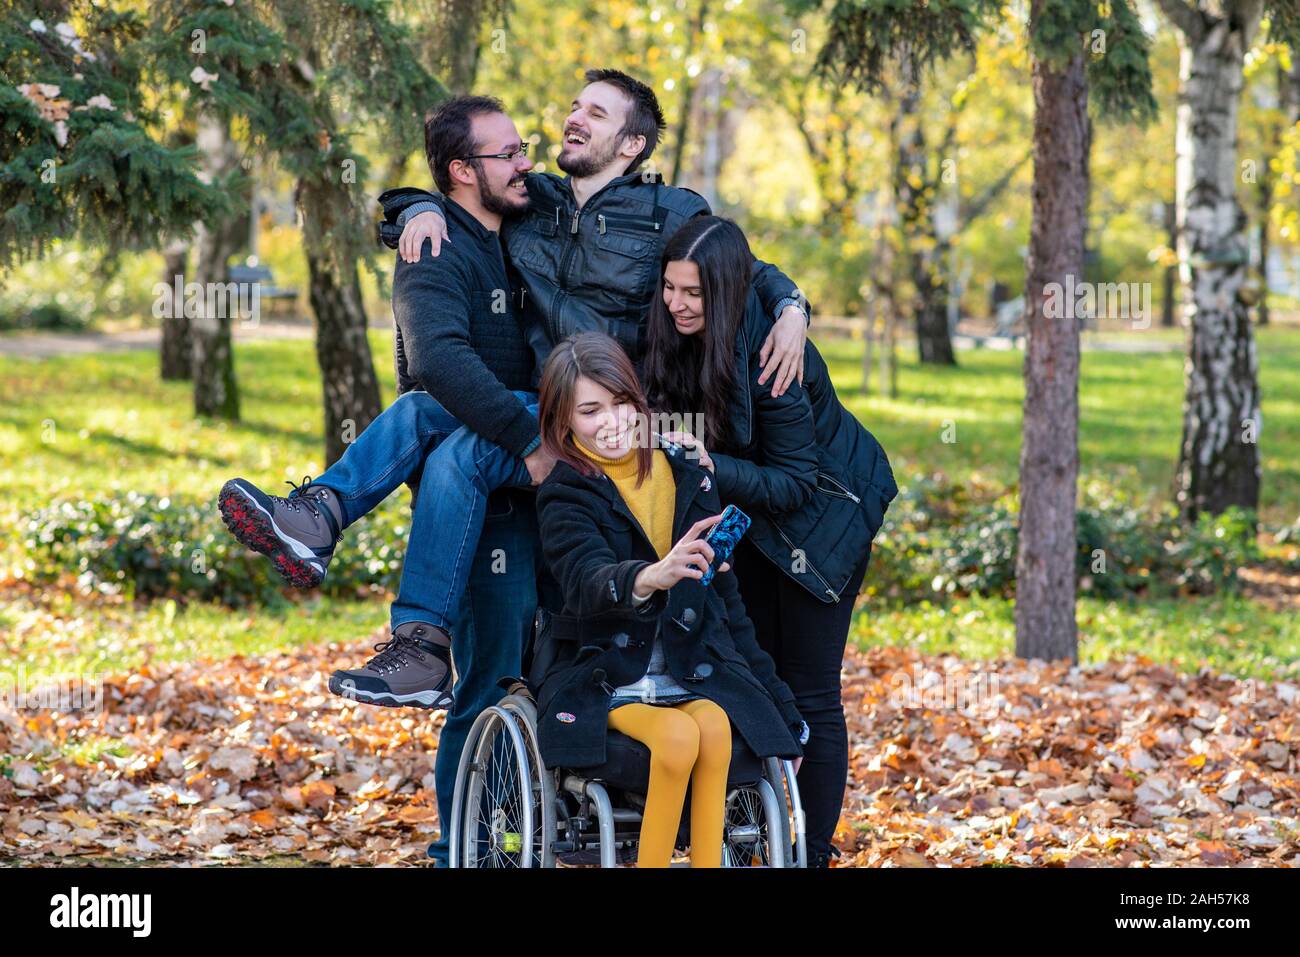 Junge behinderte Frau im Rollstuhl, die selfie mit Freunden in einem Park Stockfoto